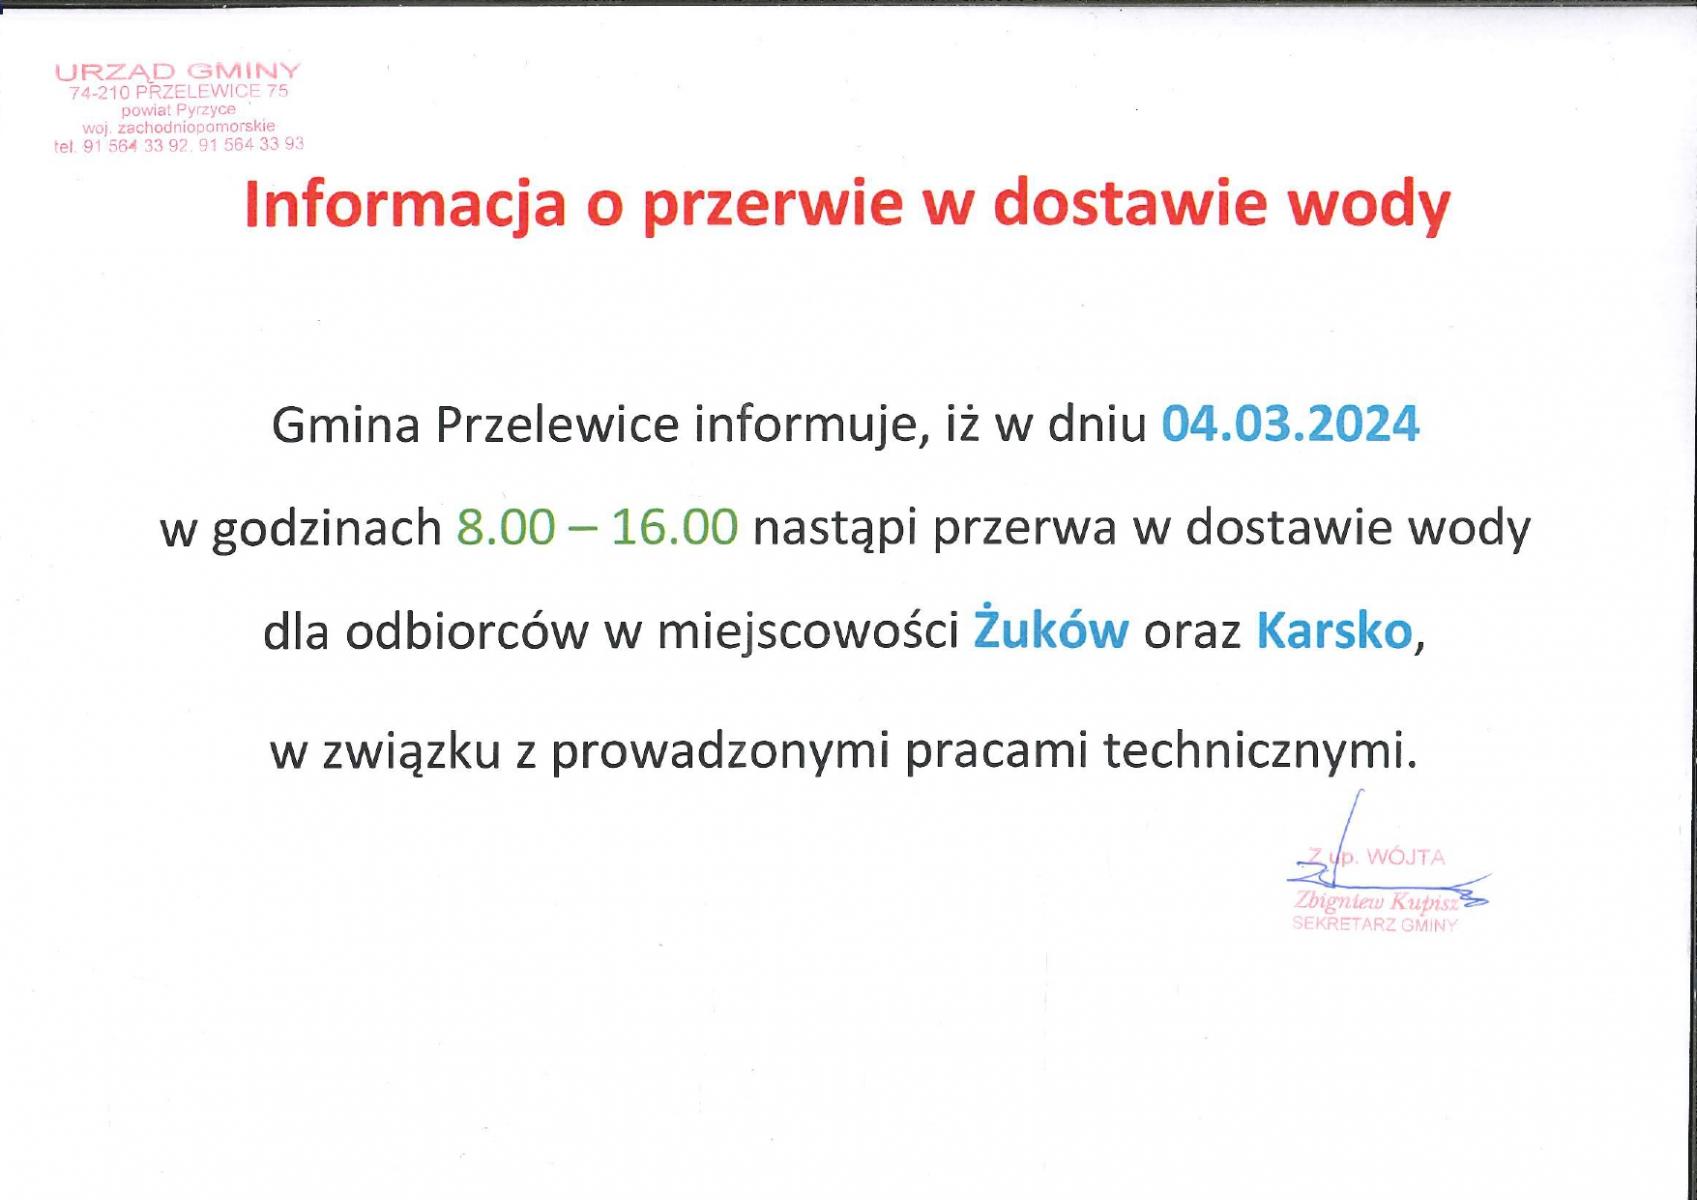 Informacja o braku wody w Żukowie i Karsku dniu 04.03.2024 r.